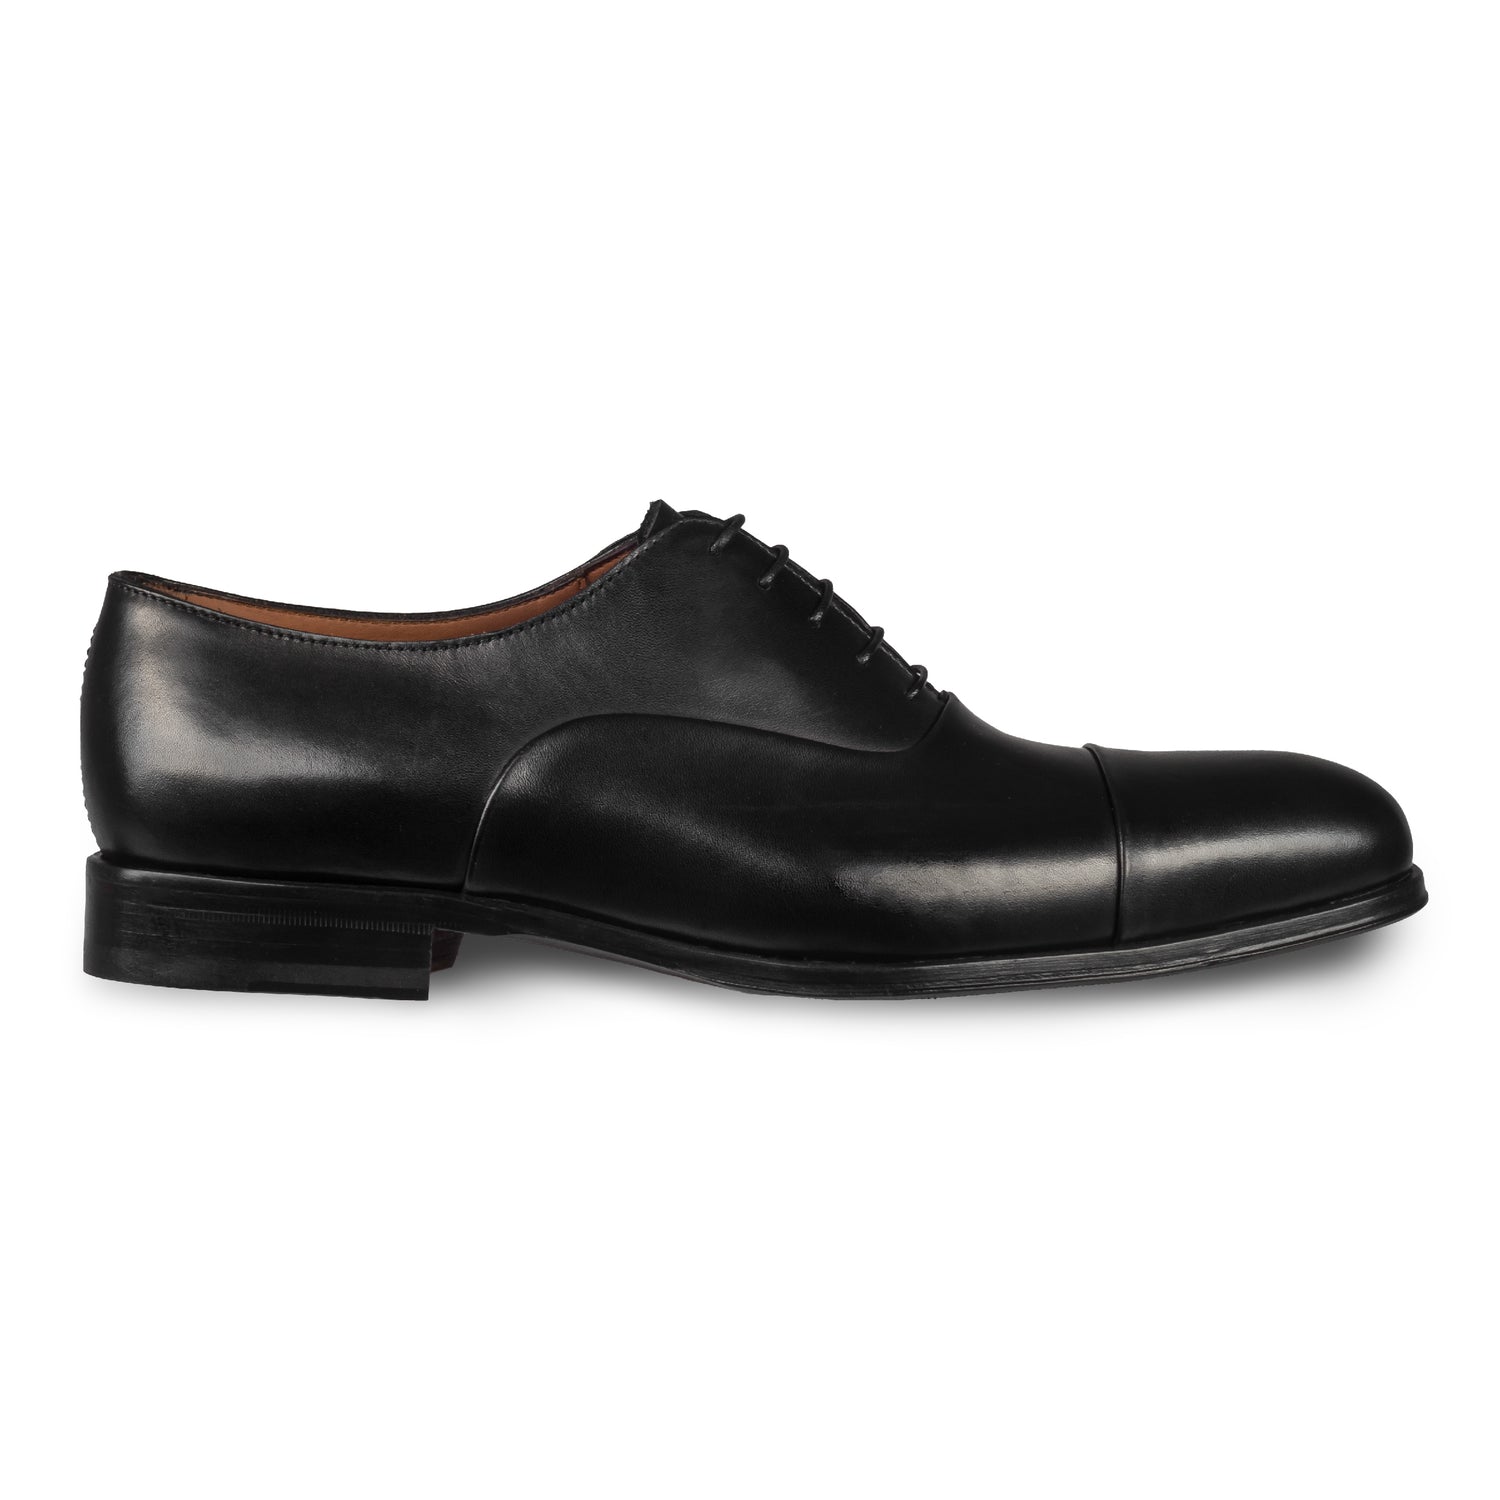 FLECS | Anzugschuh Oxford Captoe in schwarz von FLECS, durchgenäht.  Seitliche Ansicht der Außenseite rechter Schuh. Bei Sisento.